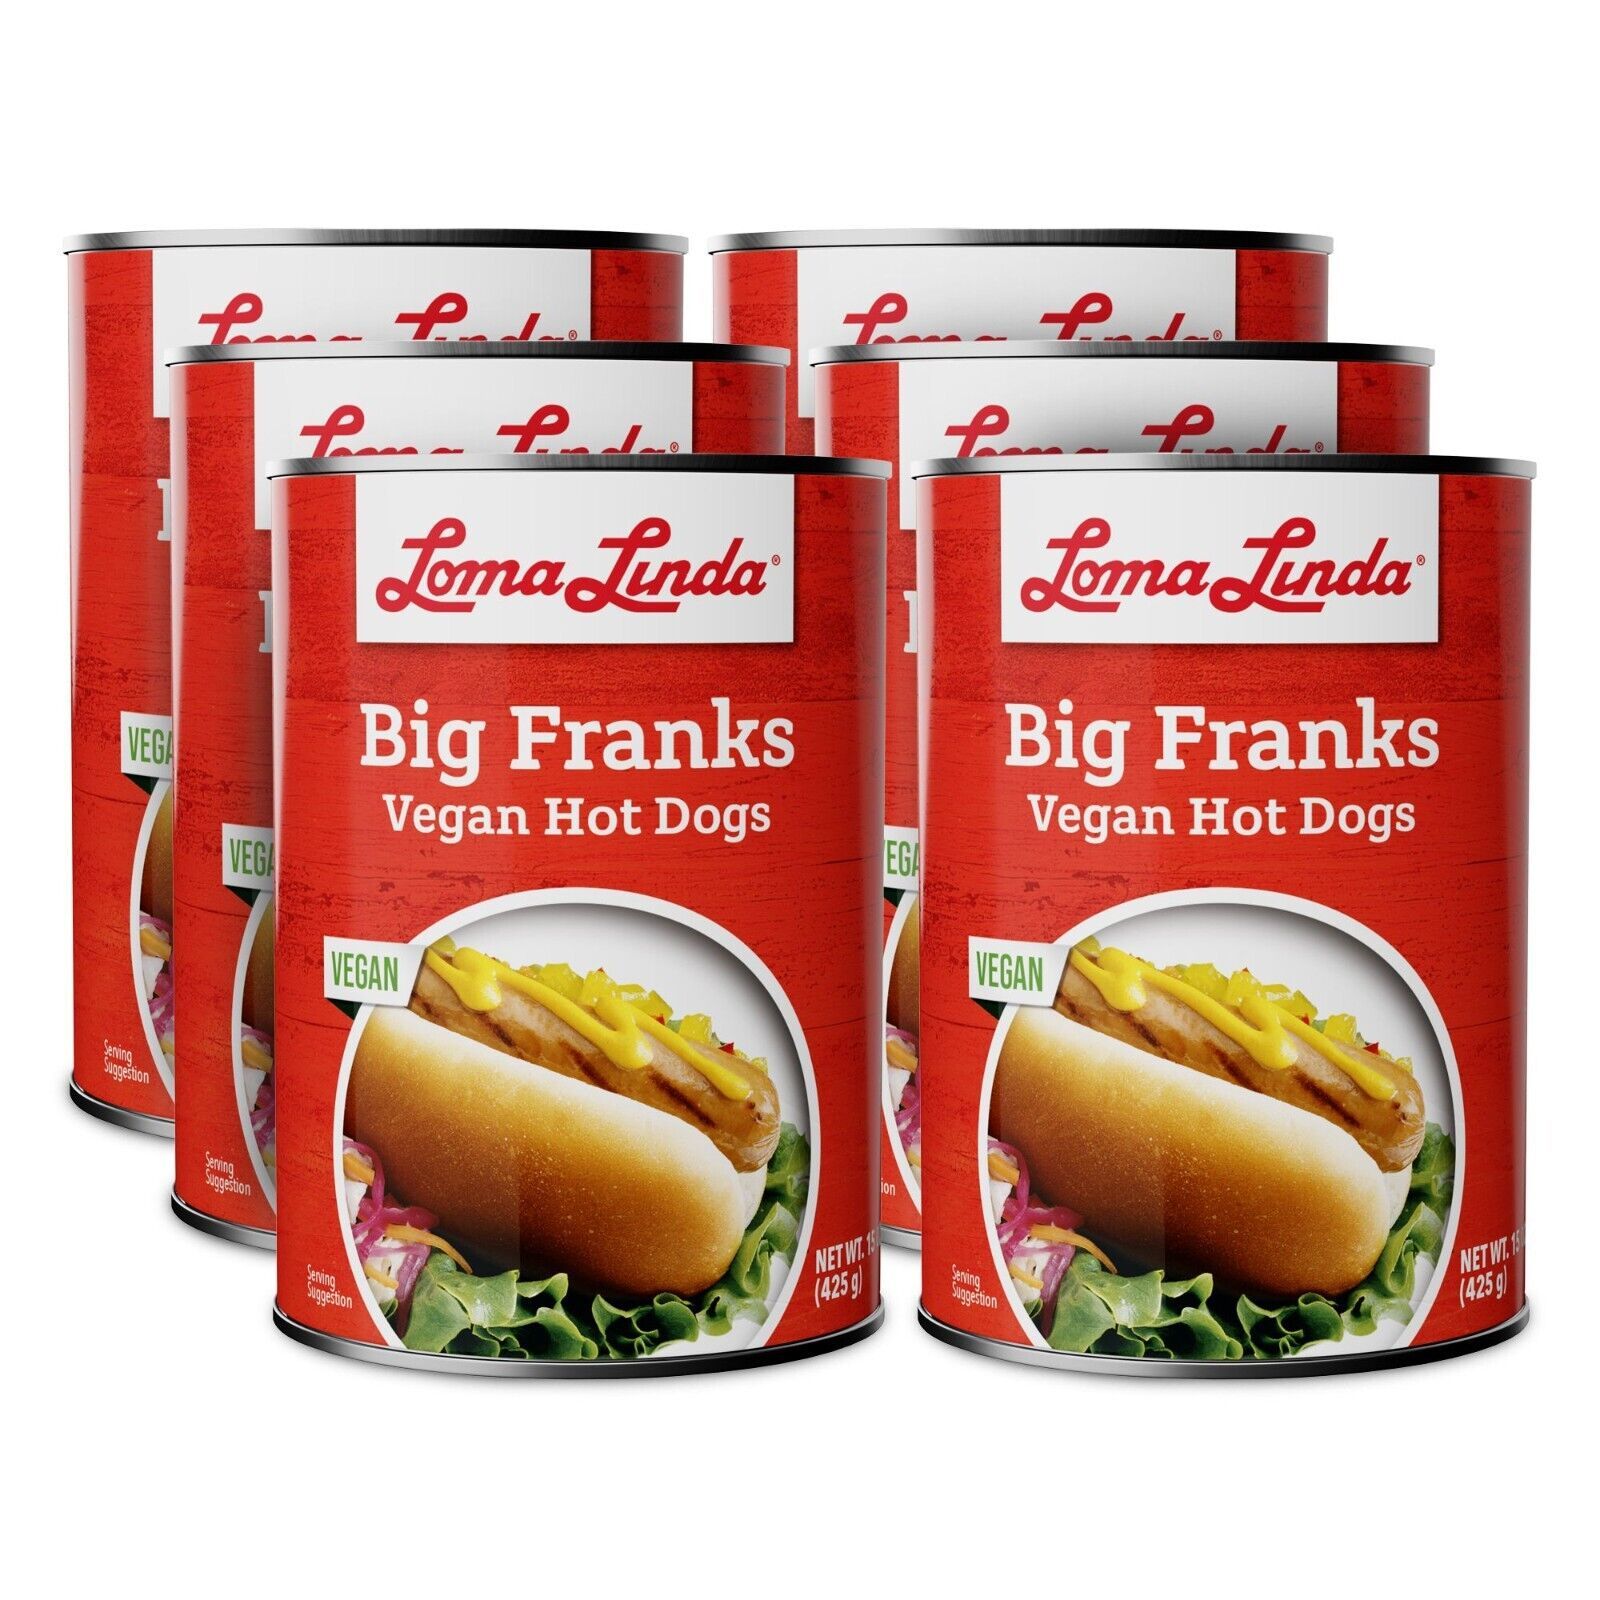 Loma Linda Big Franks (15 oz.) (6 Pack) Vegan - $42.45